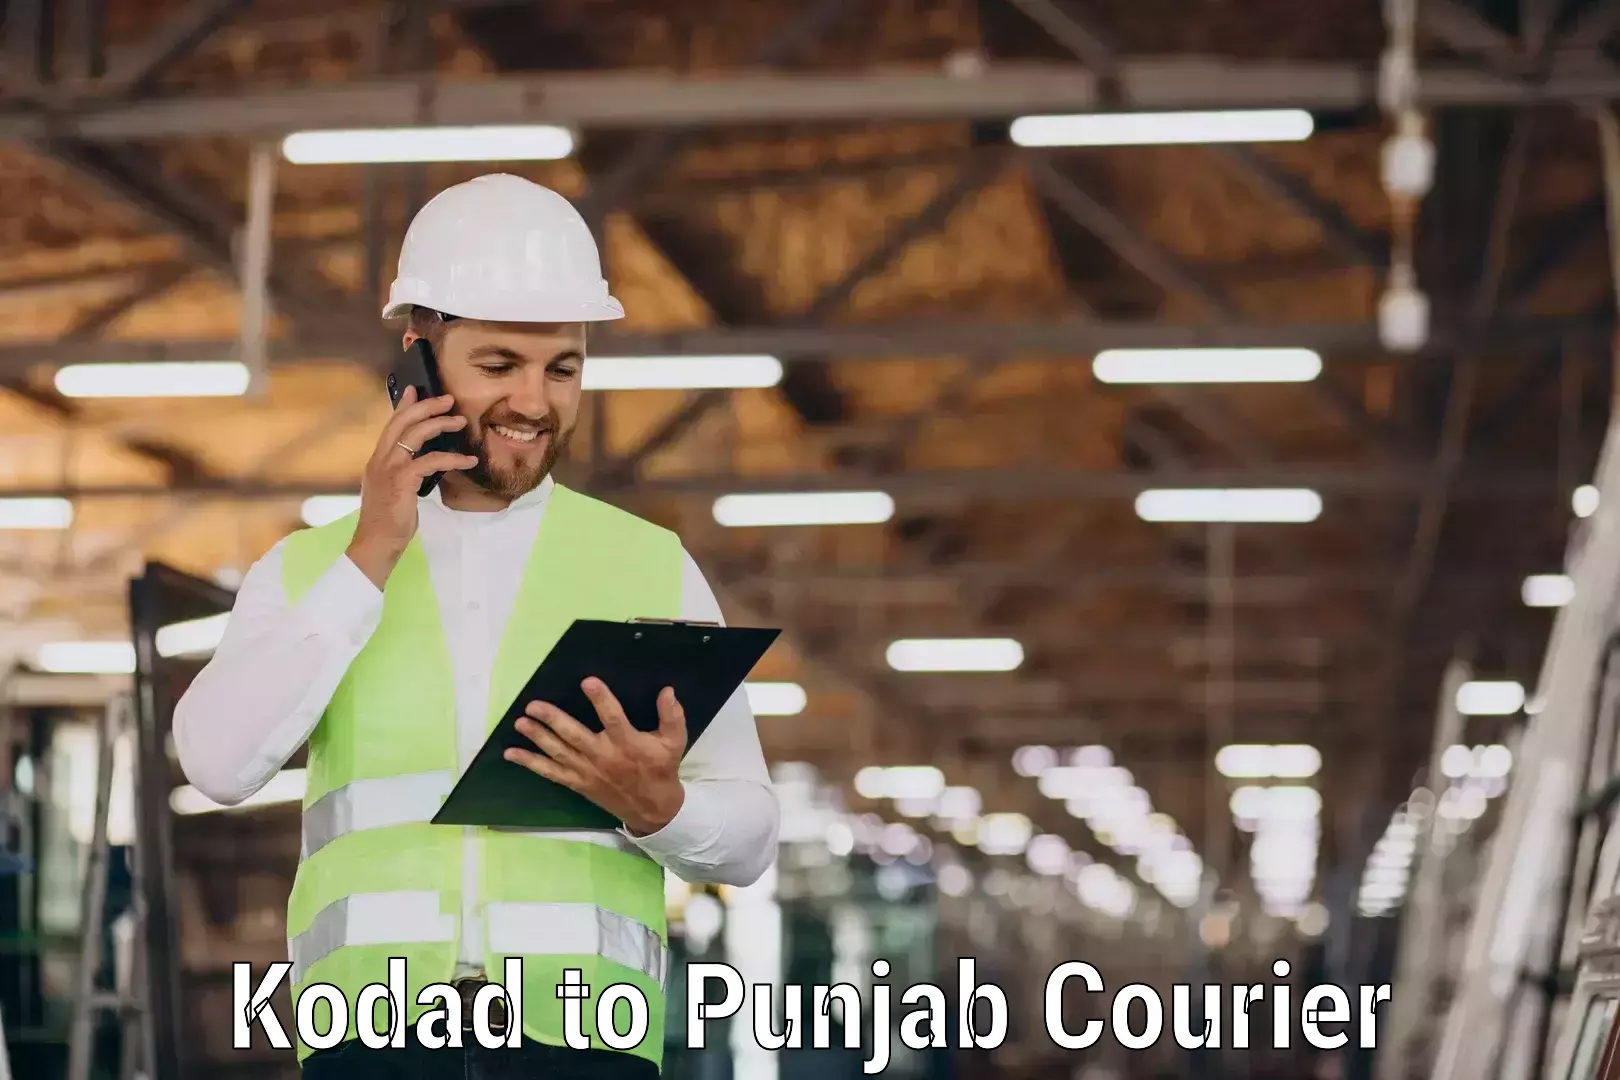 Urban courier service Kodad to Sirhind Fatehgarh